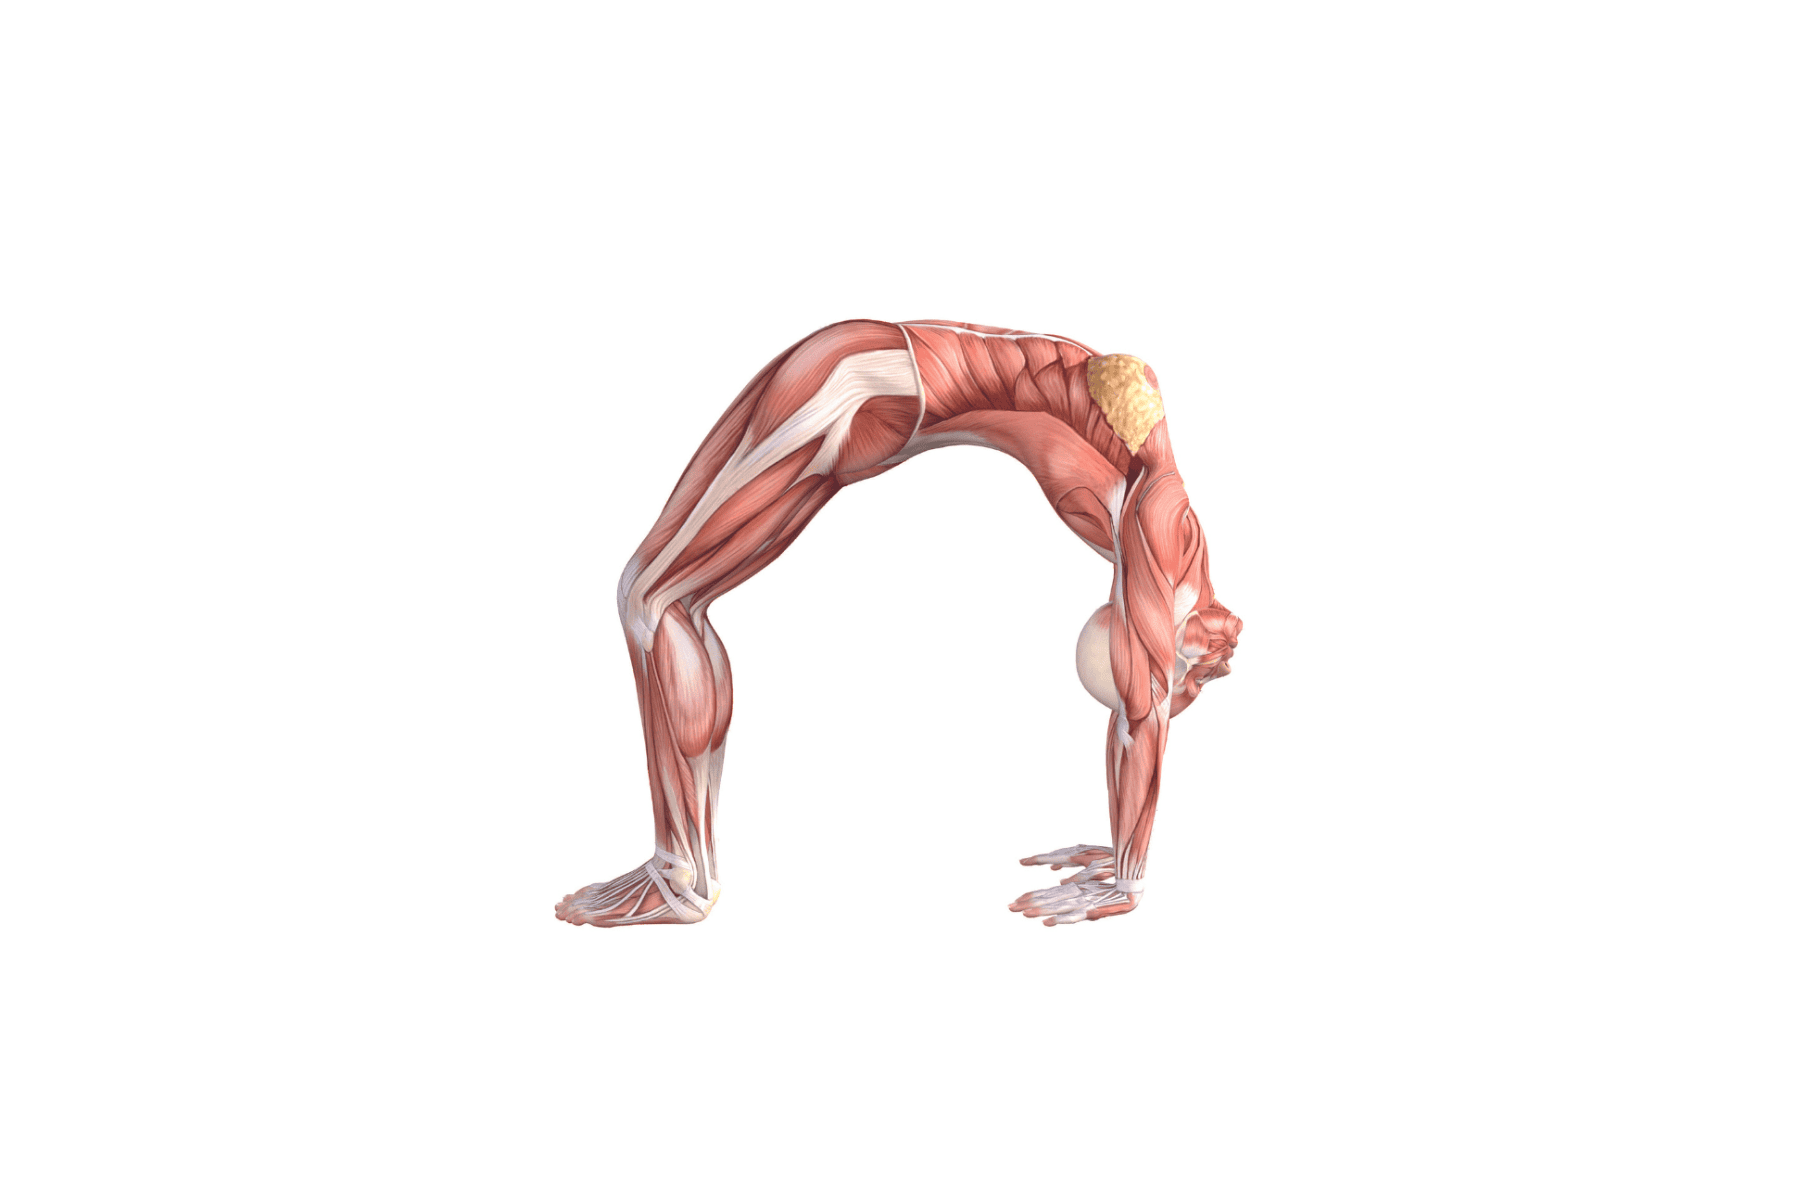 Yogasana for strengthening back muscles- Dhanurasana